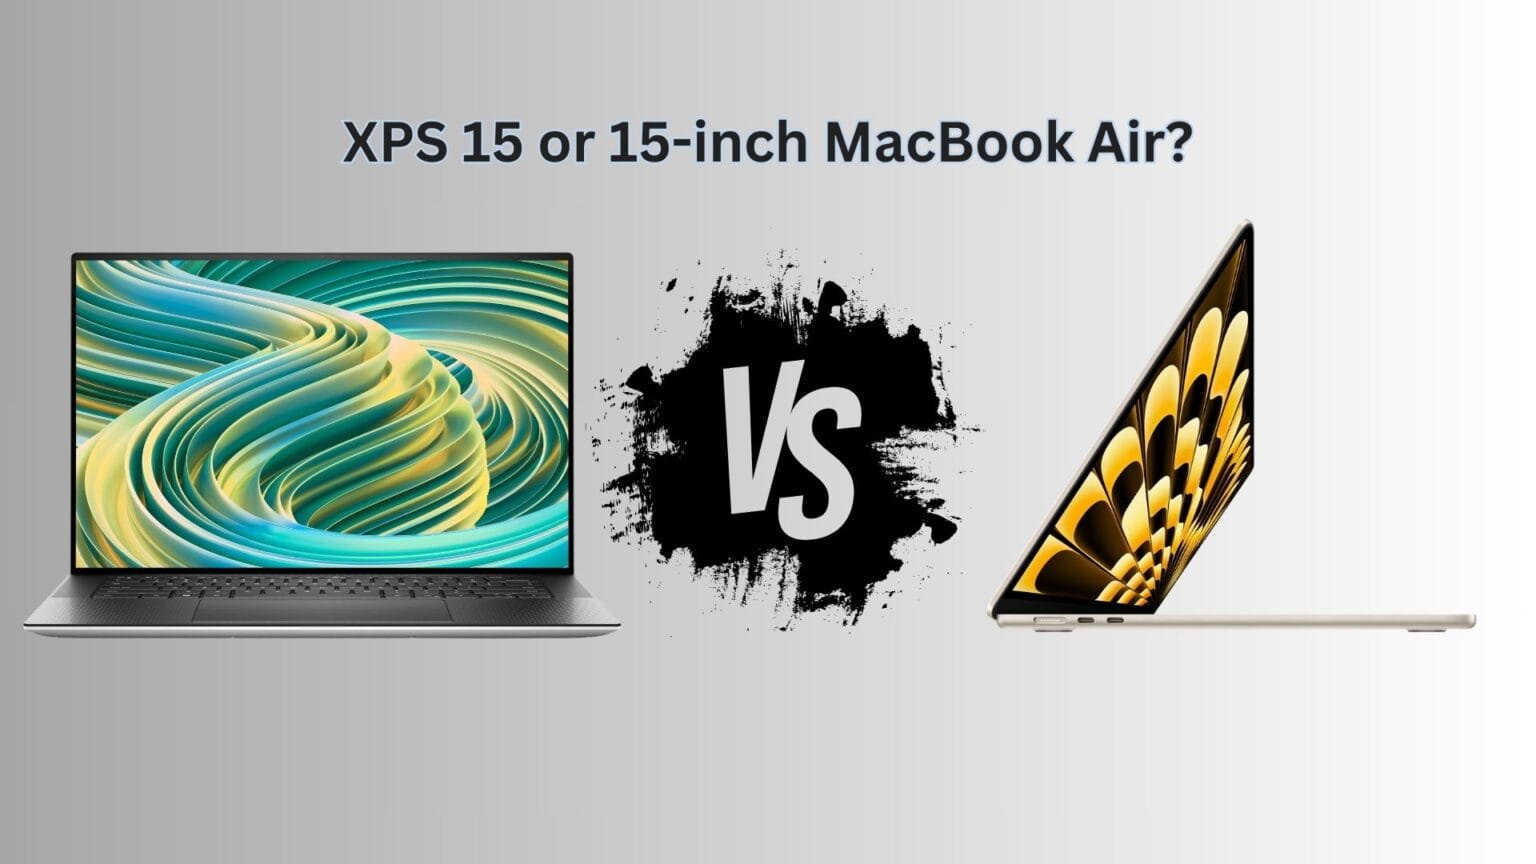 Dell XPS 15 vs. 15-inch MacBook Air comparison